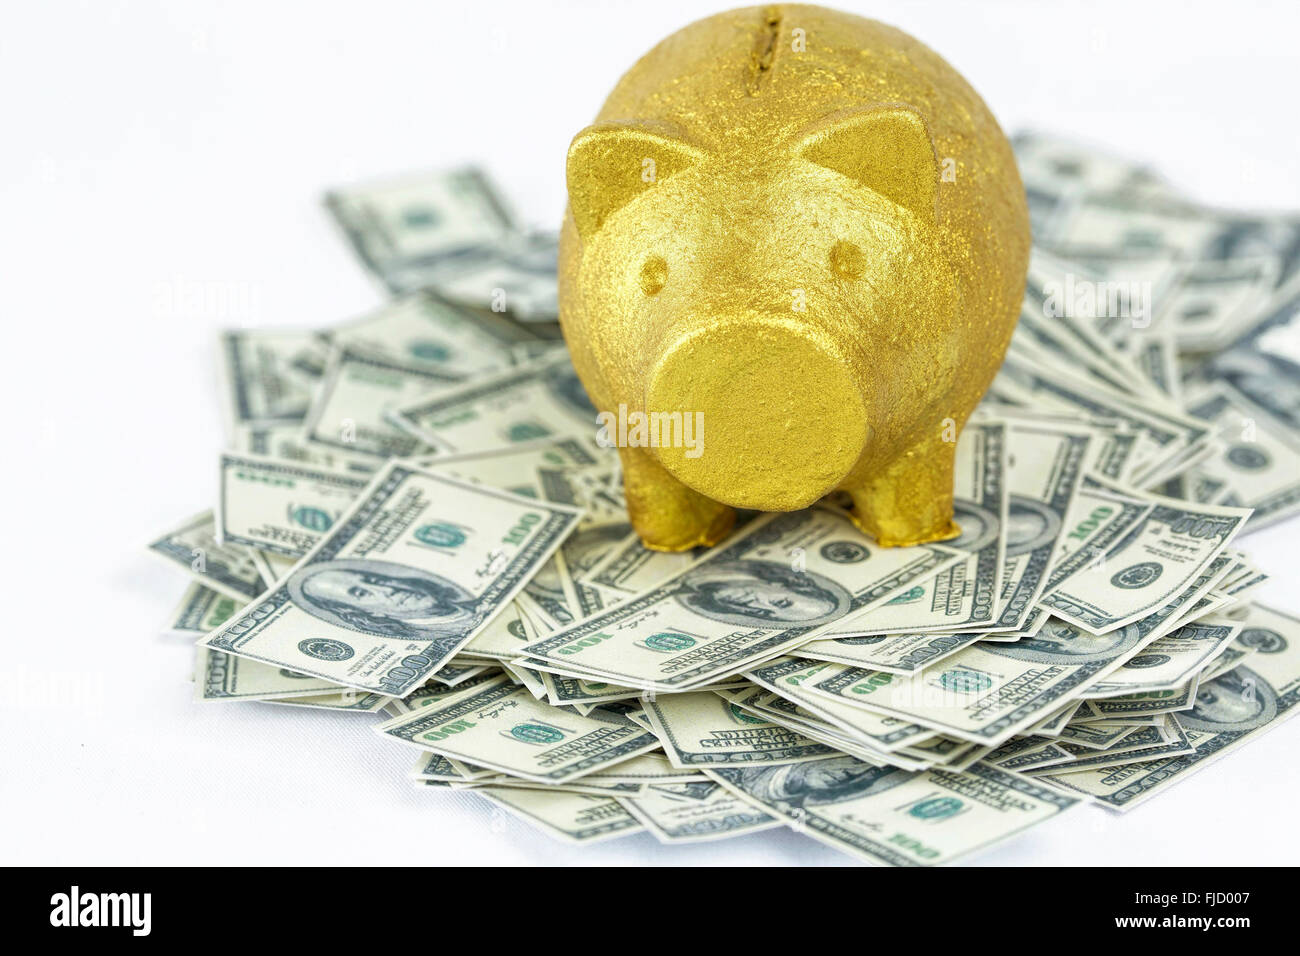 Golden Piggy banco en pila de billetes de 100 dólares. Concepto de riqueza, prosperidad y éxito. Foto de stock